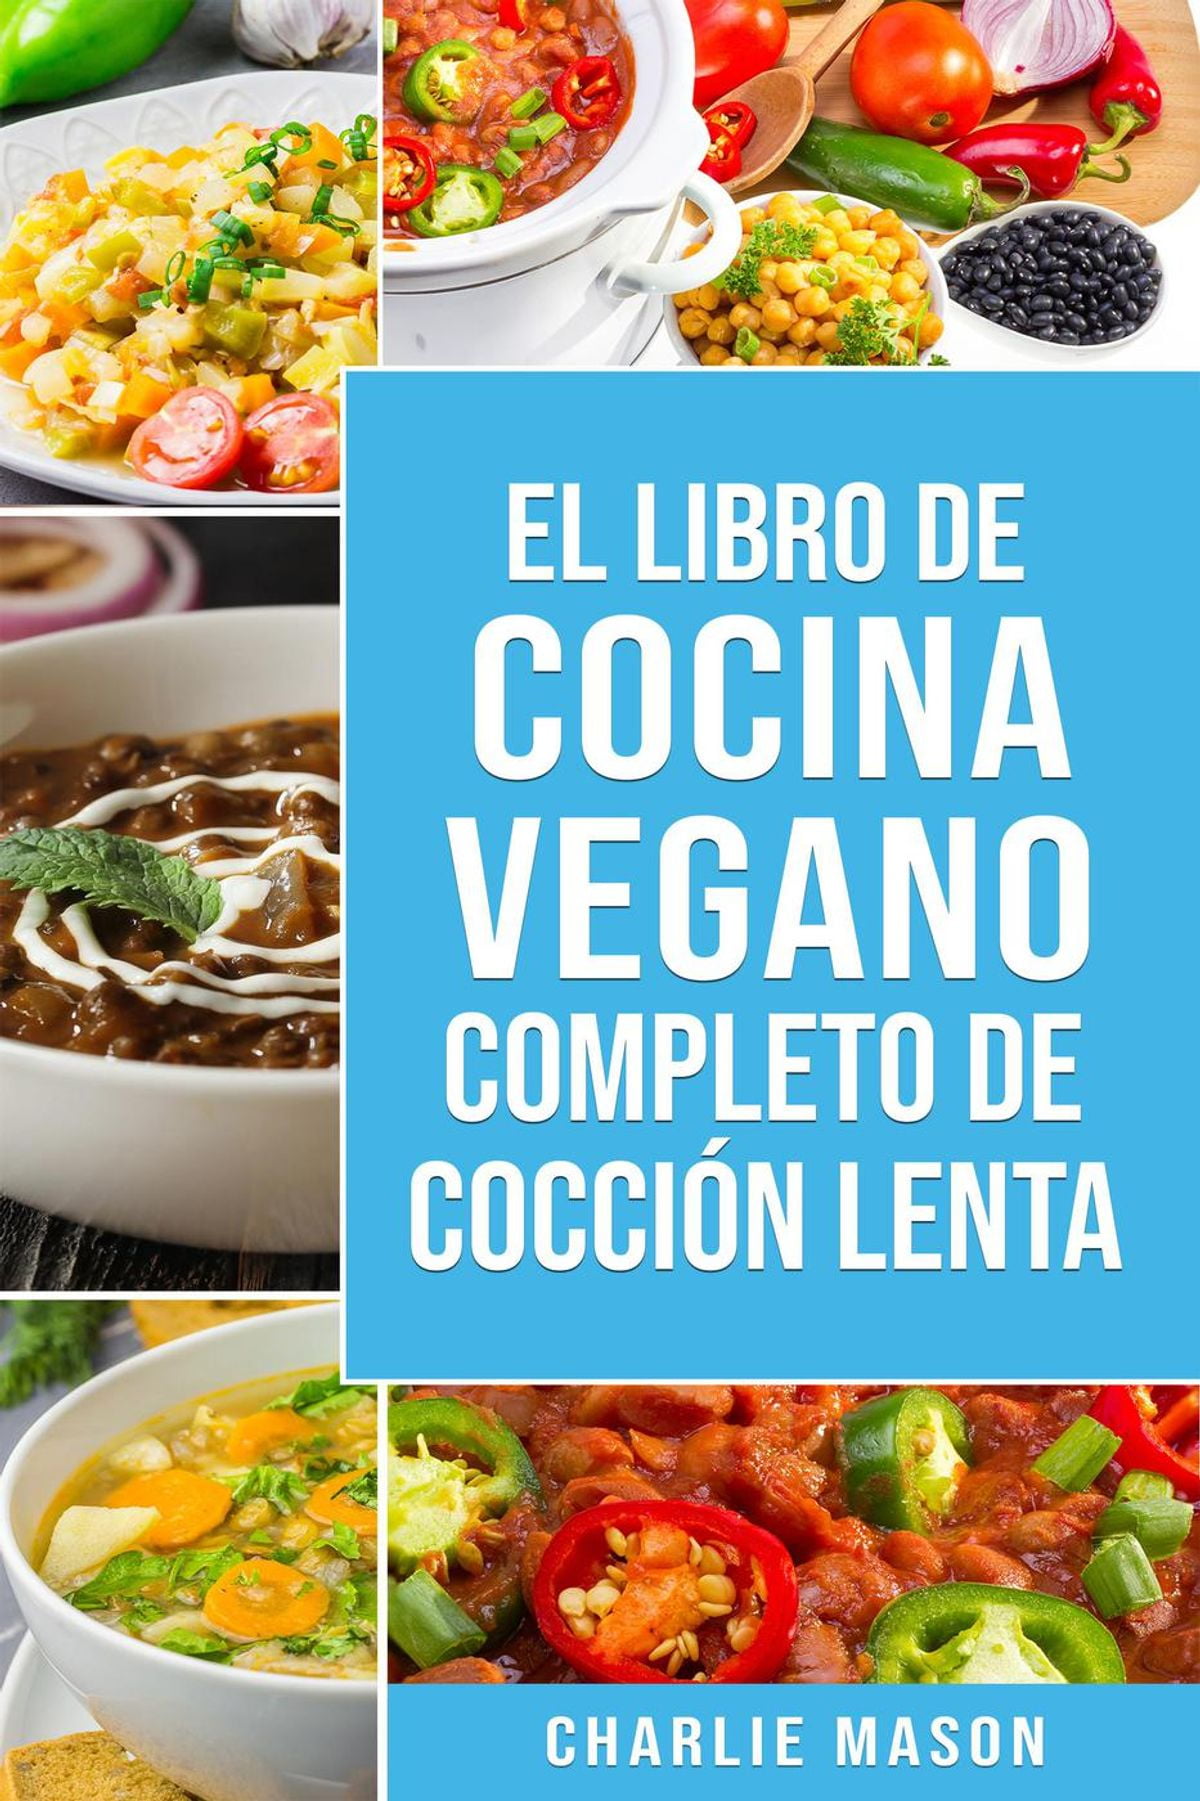 40 Top Photos Cocina Vegana Libro / Libro de cocina vegana de cocción lenta En Español/ Vegan ...